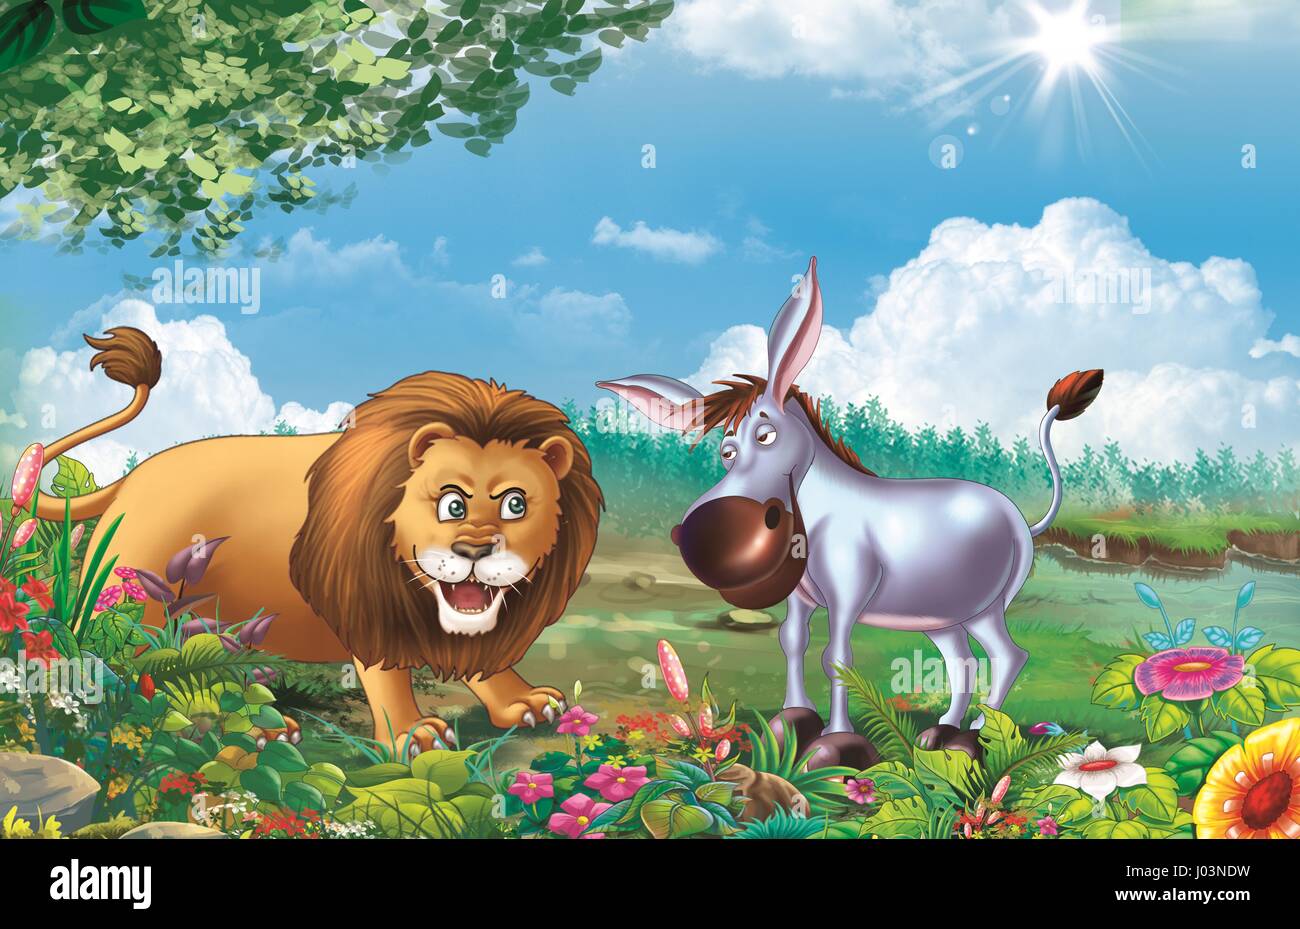 lion and donkey Stock Photo